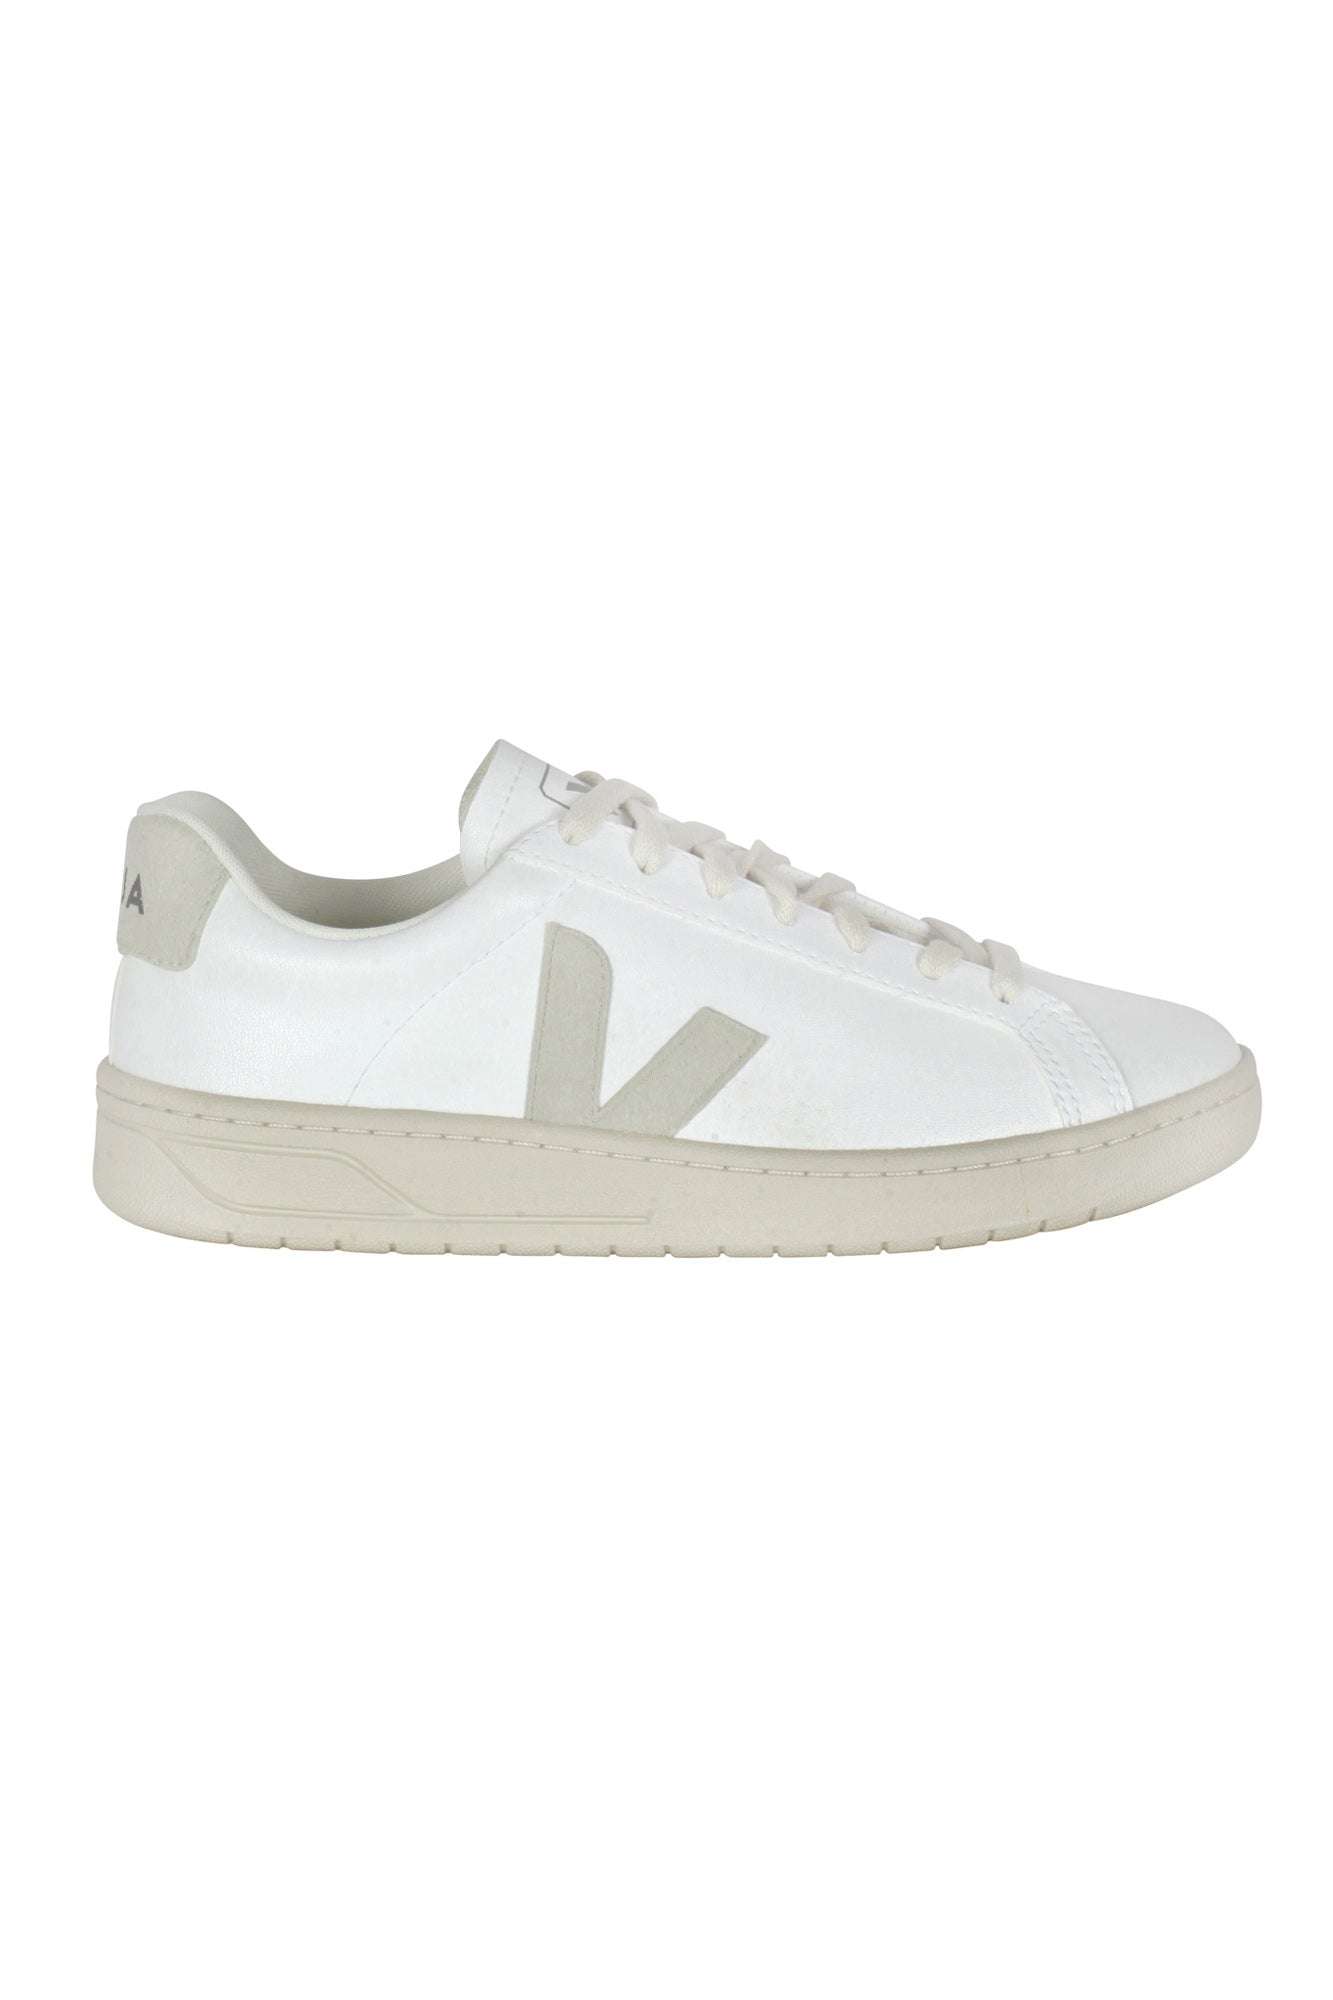 Veja - Sneakers - 430616 - Bianco/Naturale